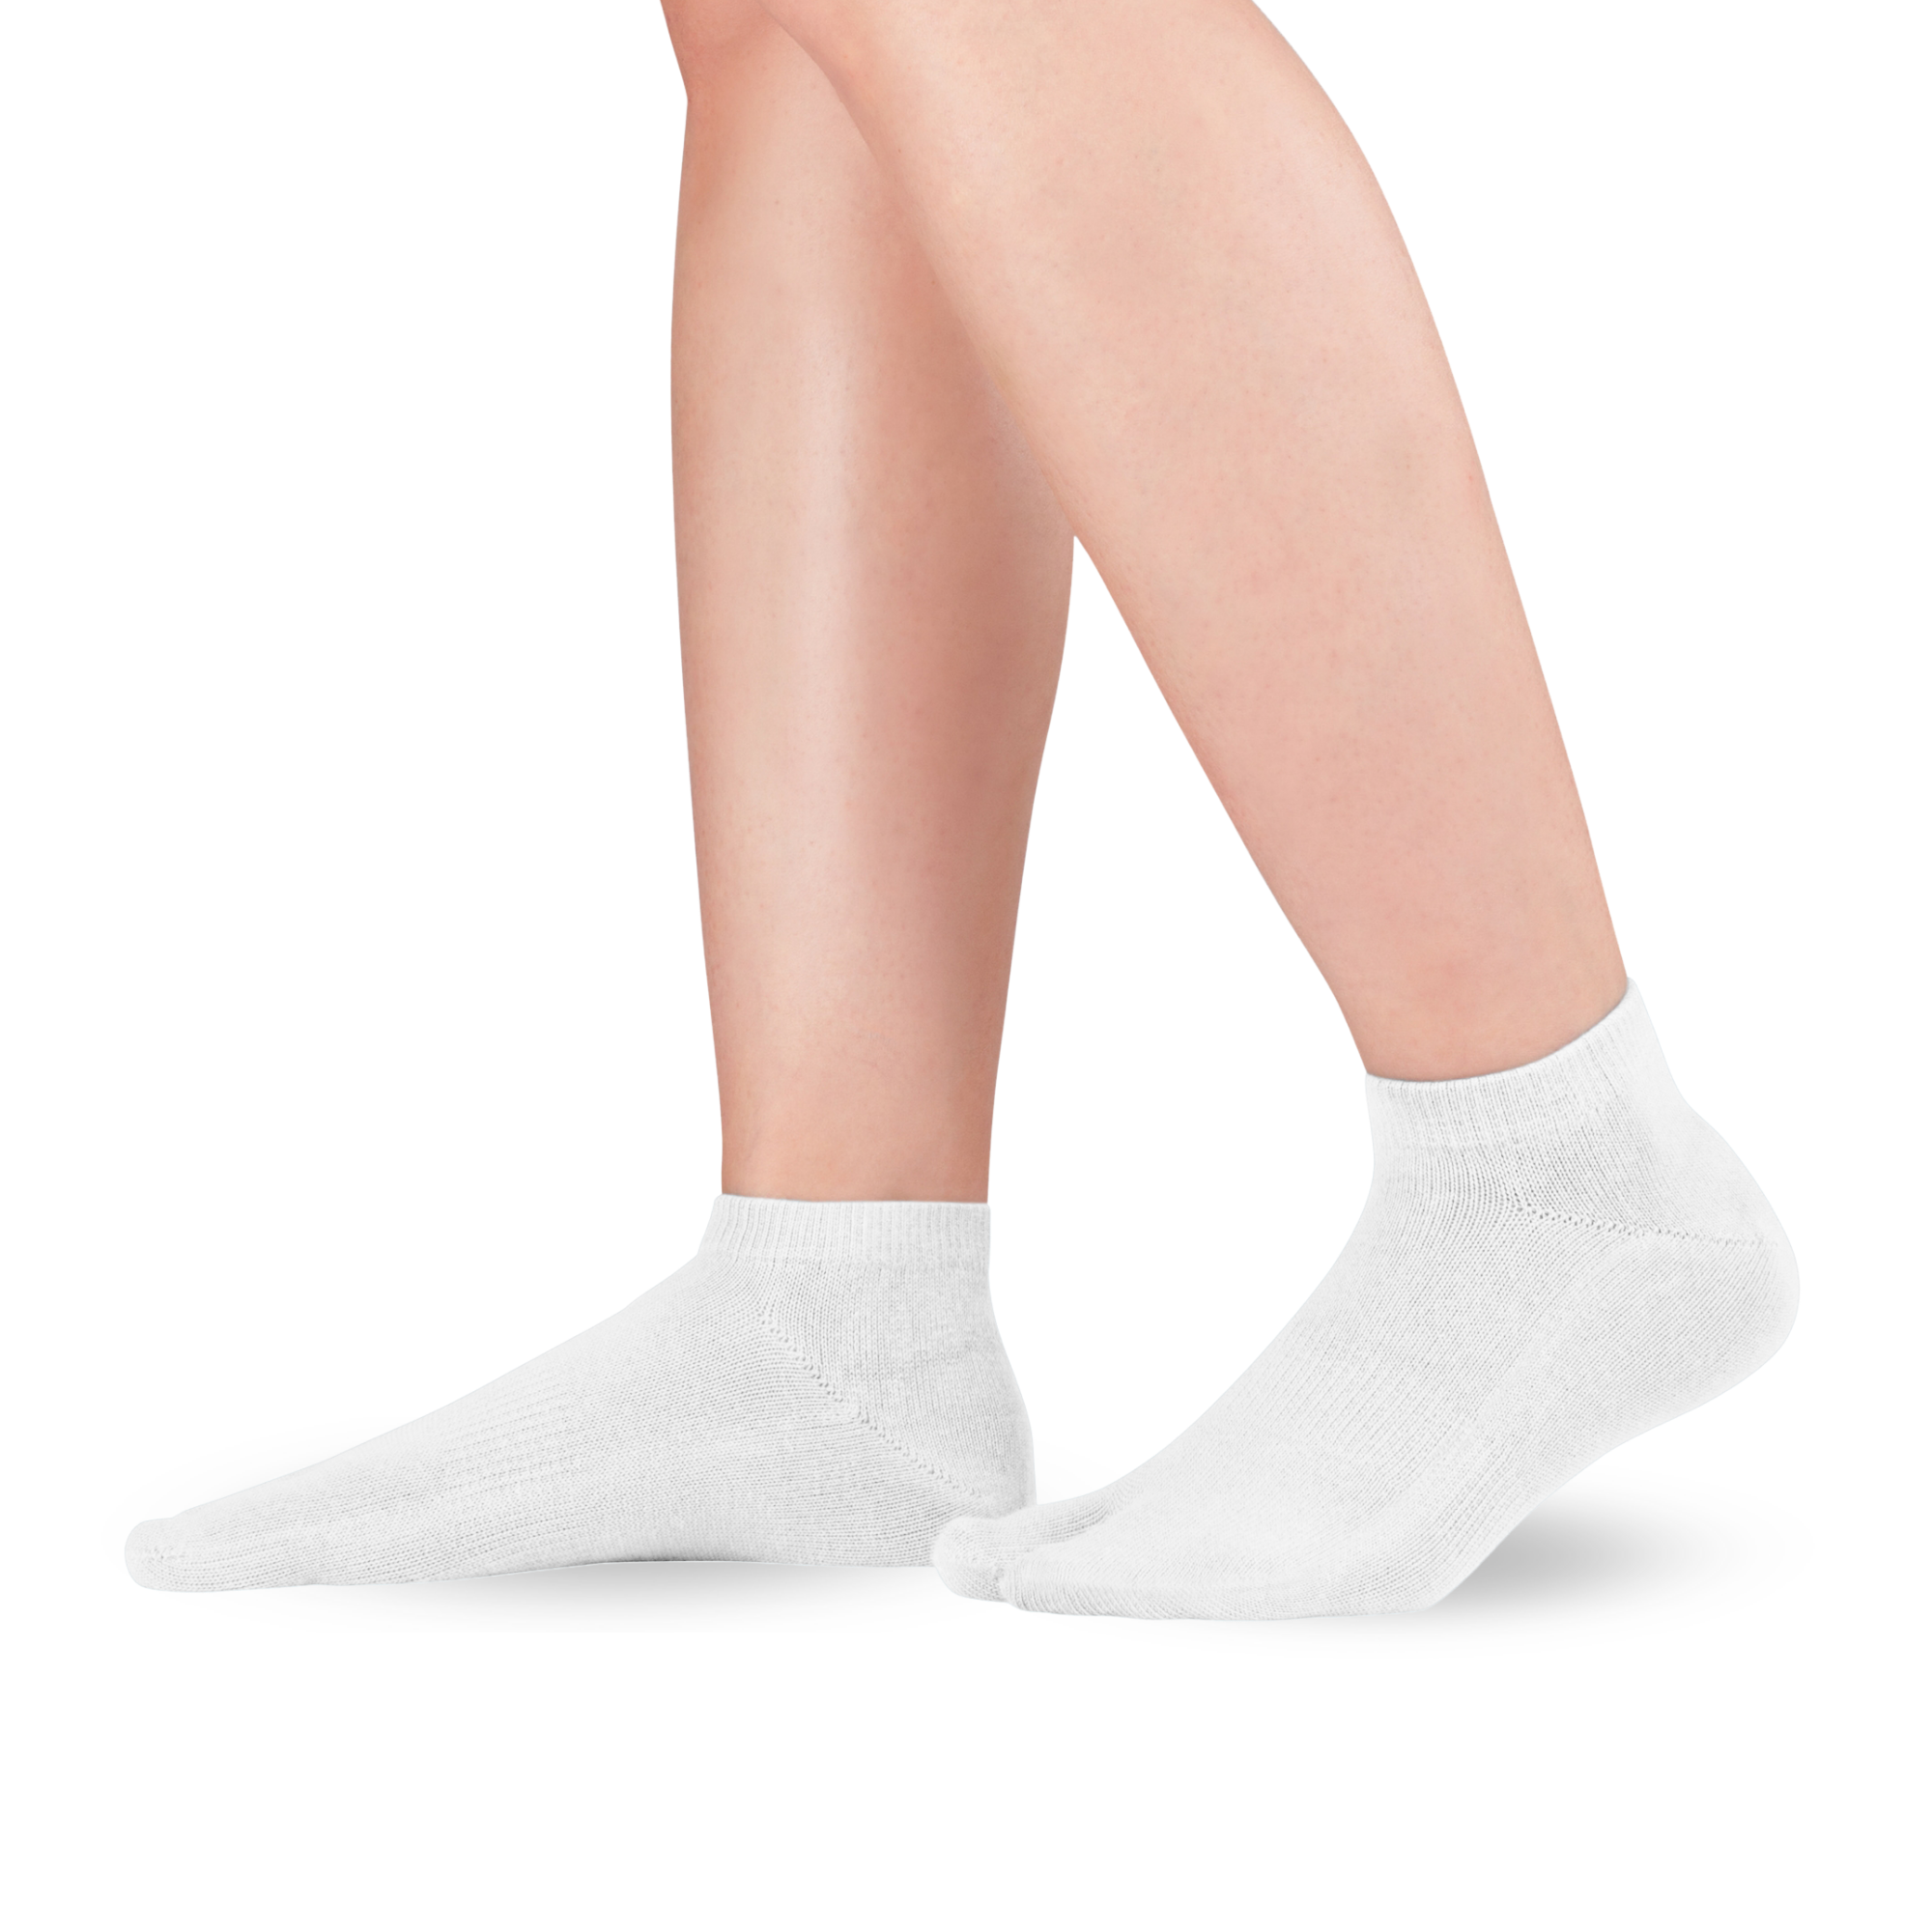 Knitido Tabi Socks Sneaker, chaussettes courtes en coton avec un seul gros orteil blanc